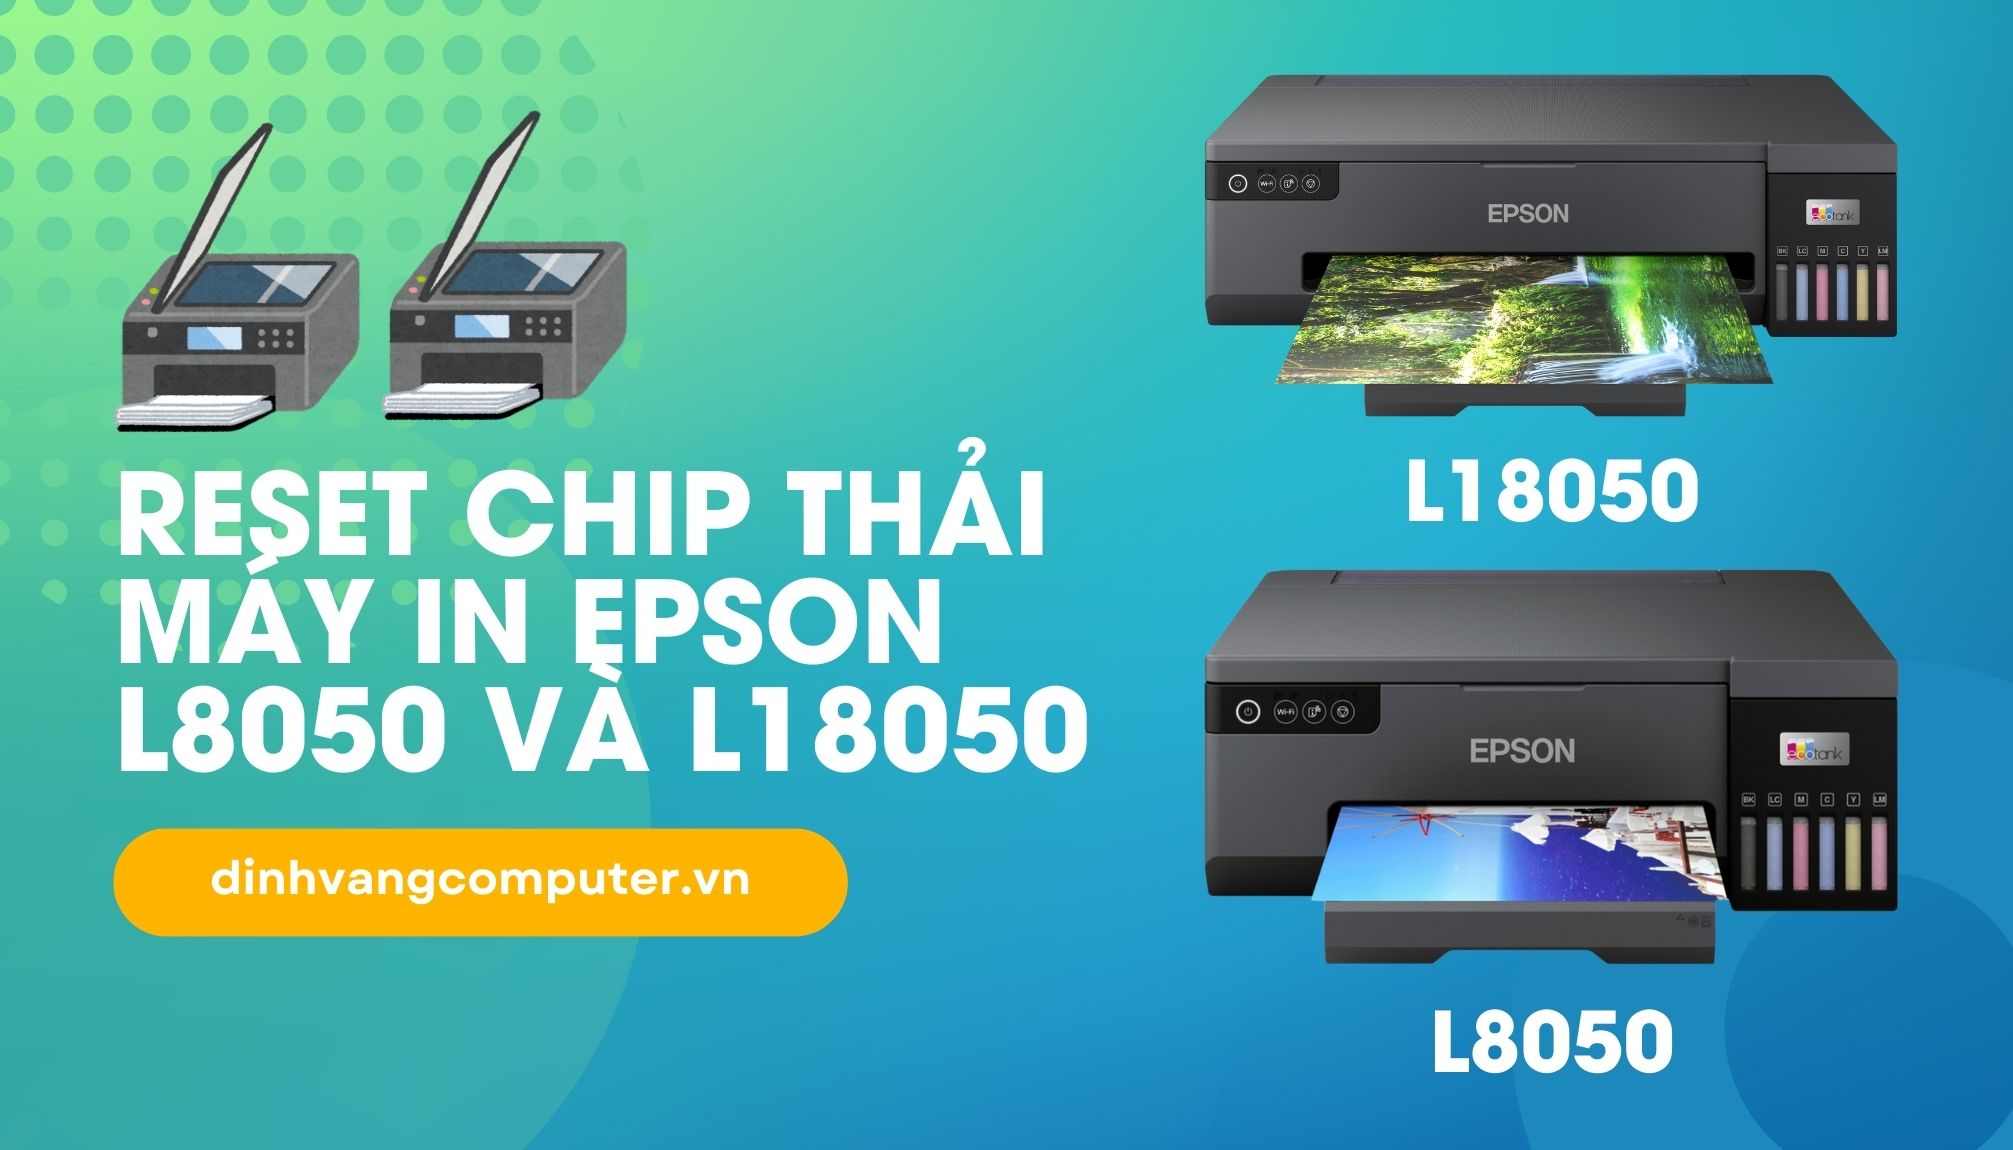 Hướng Dẫn Reset Chip Thải Máy In Epson L8050 Và L18050 Chi Tiết